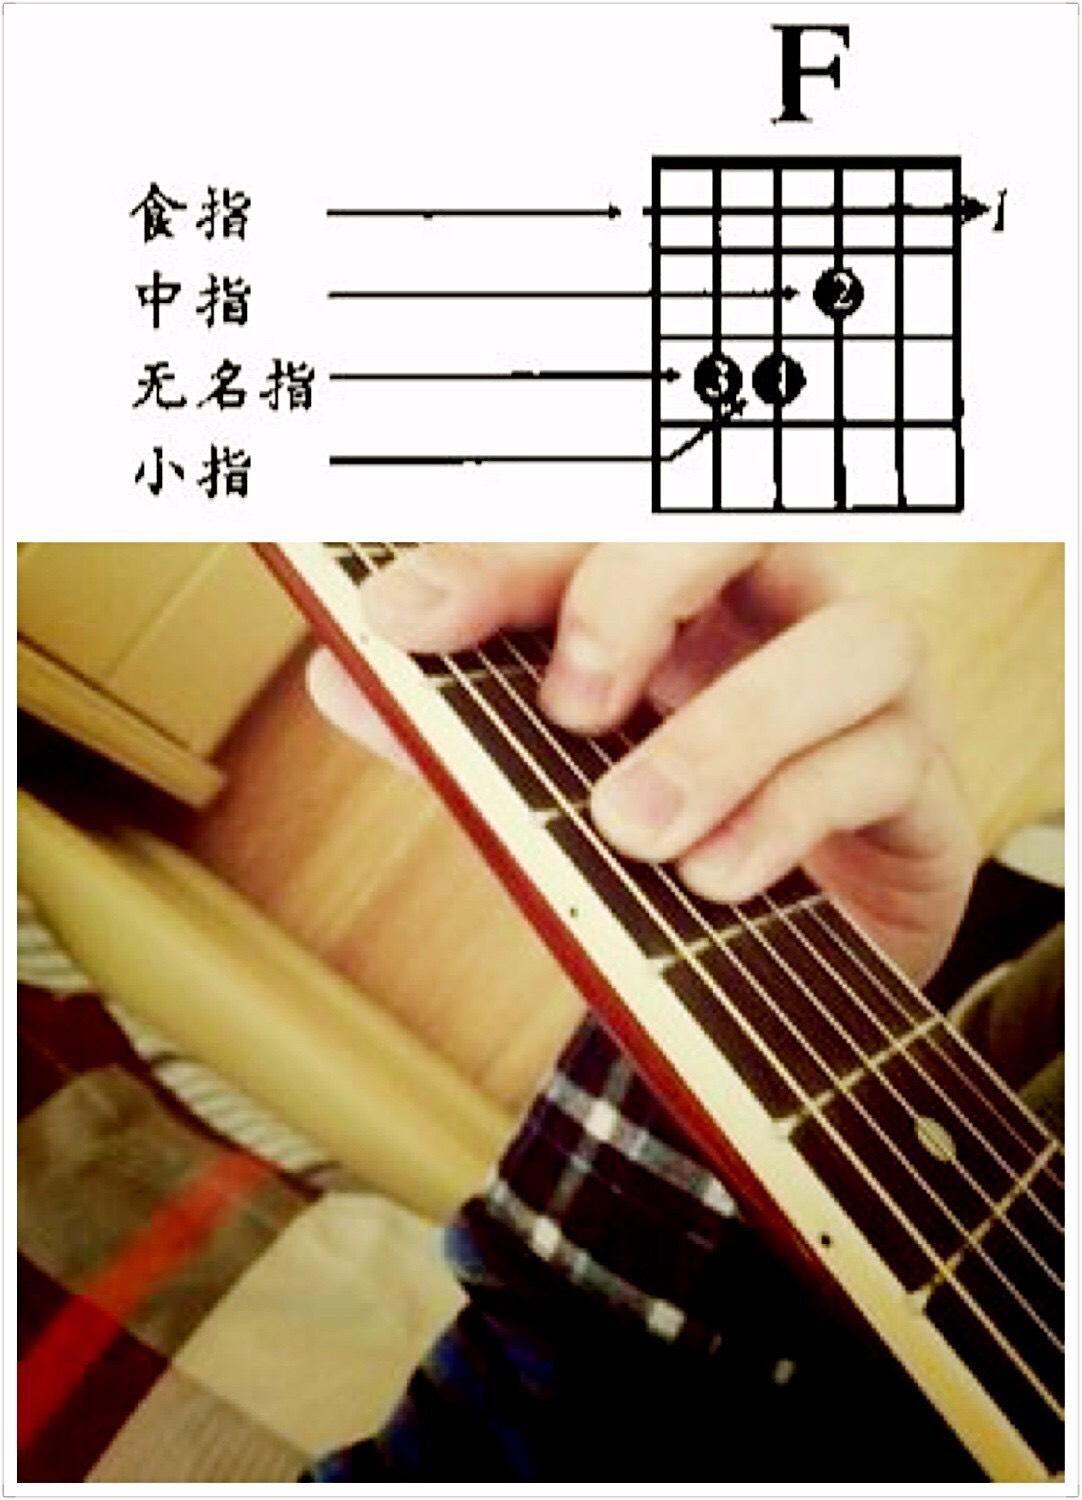 吉他常用分解和弦节奏型-吉他入门 - 乐器学习网